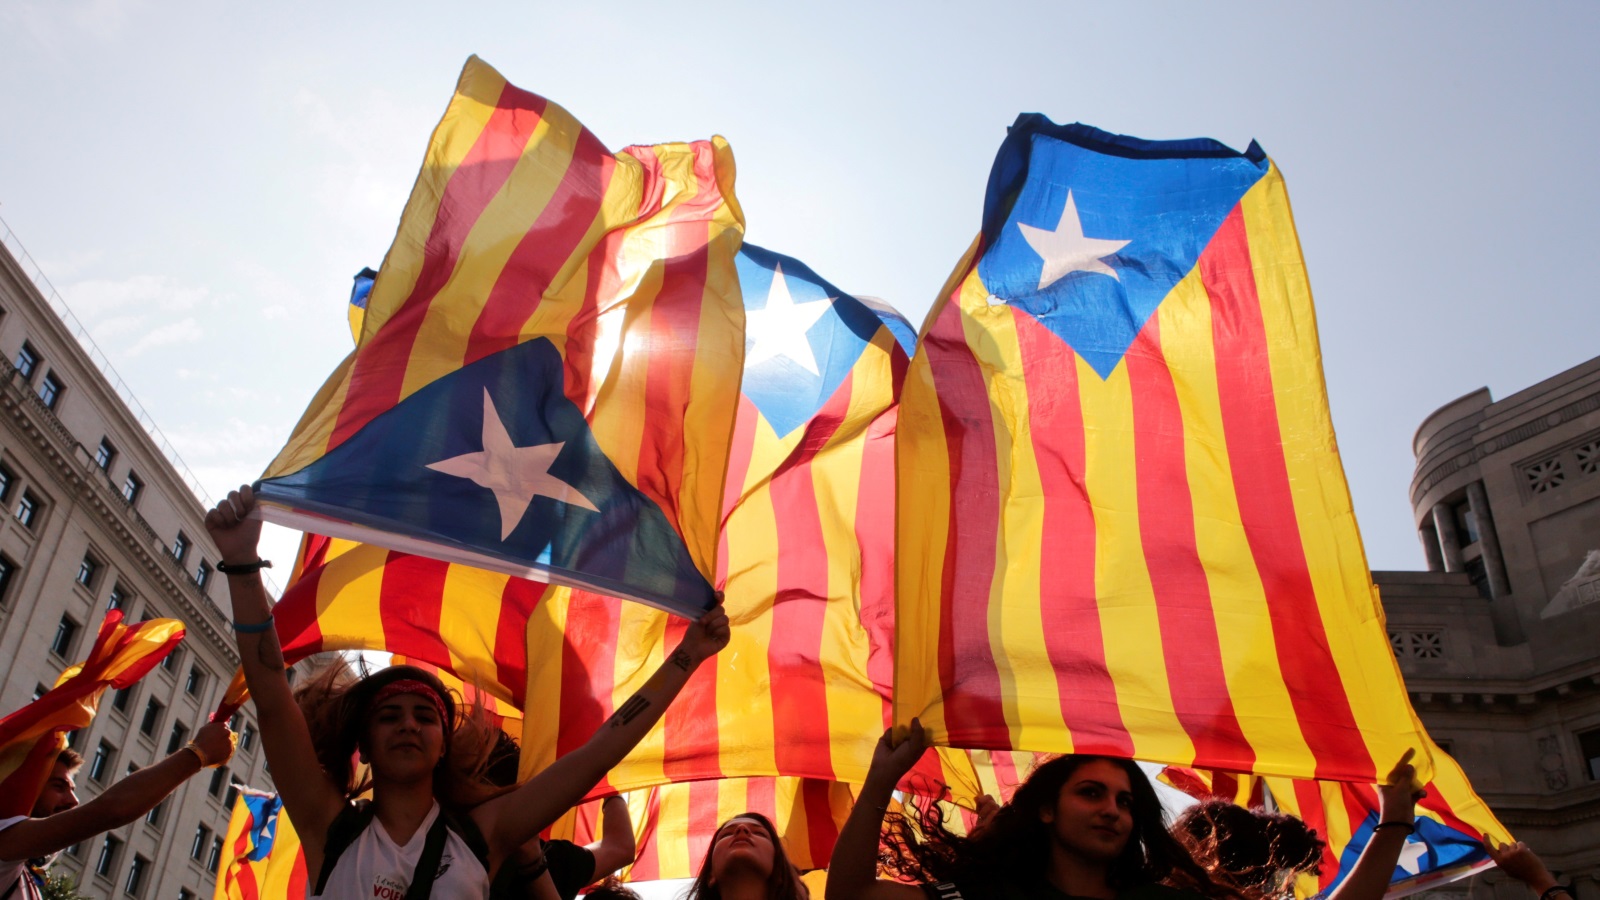 أعلام كتالونيا أثناء مظاهرة في برشلونة في أعقاب الاستفتاء الذي لقي معارضة شديدة (رويترز)